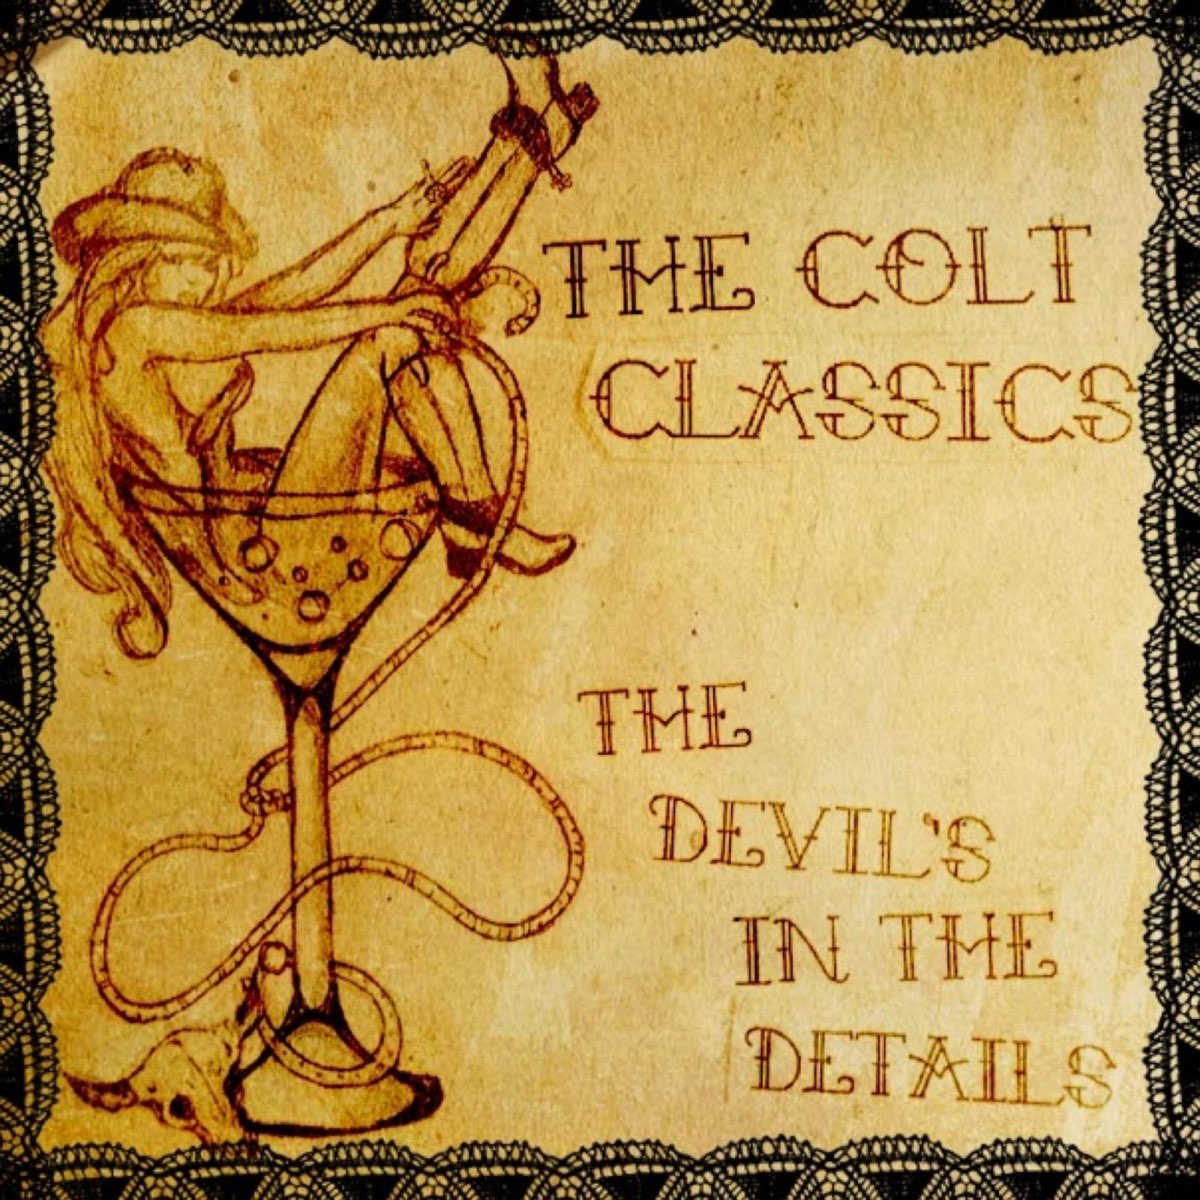 Devil in the details. Devil's details. Devil in details. JT Music the details in the Devil.